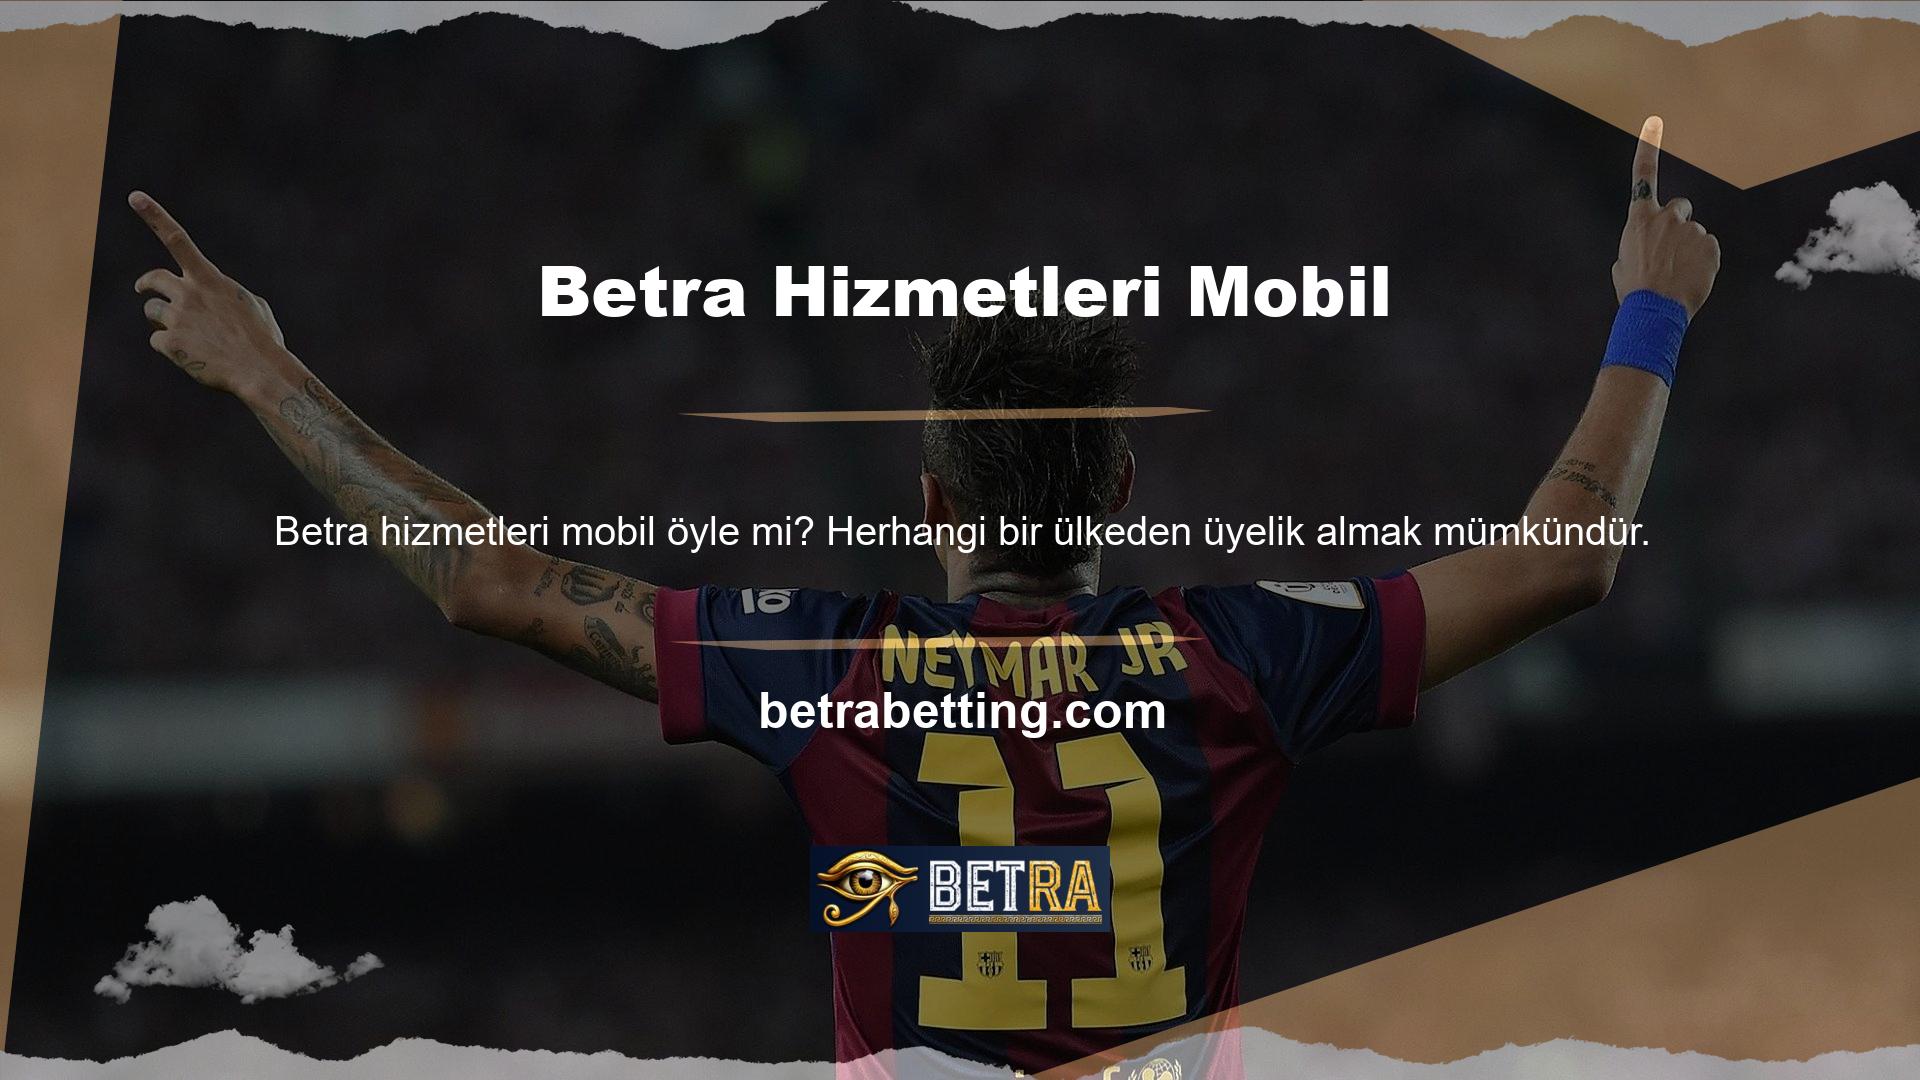 Avrupa'da Betra adında bir mobil web sitesi faaliyet göstermektedir